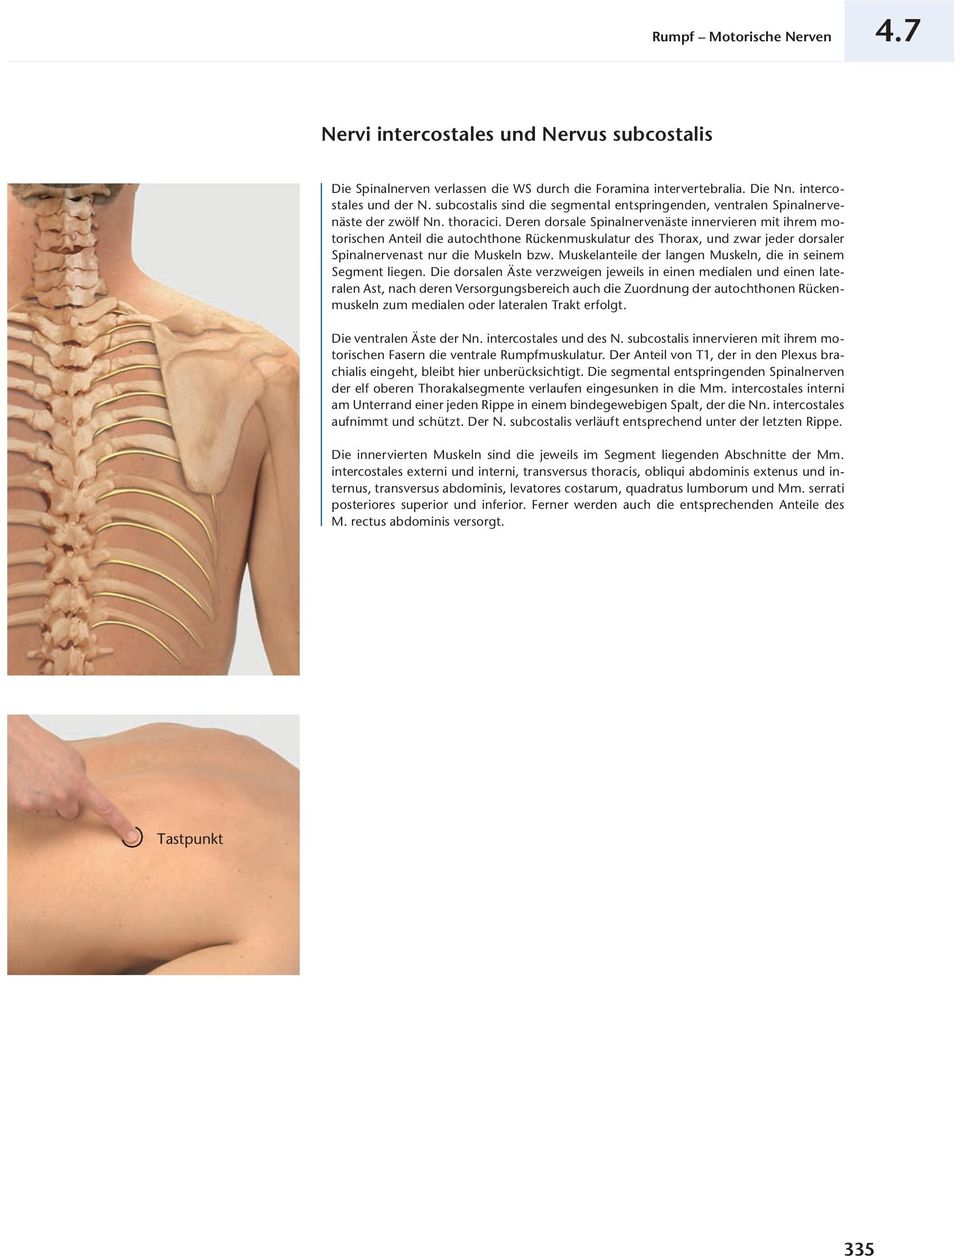 Deren dorsale Spinalnervenäste innervieren mit ihrem motorischen Anteil die autochthone Rückenmuskulatur des Thorax, und zwar jeder dorsaler Spinalnervenast nur die Muskeln bzw.